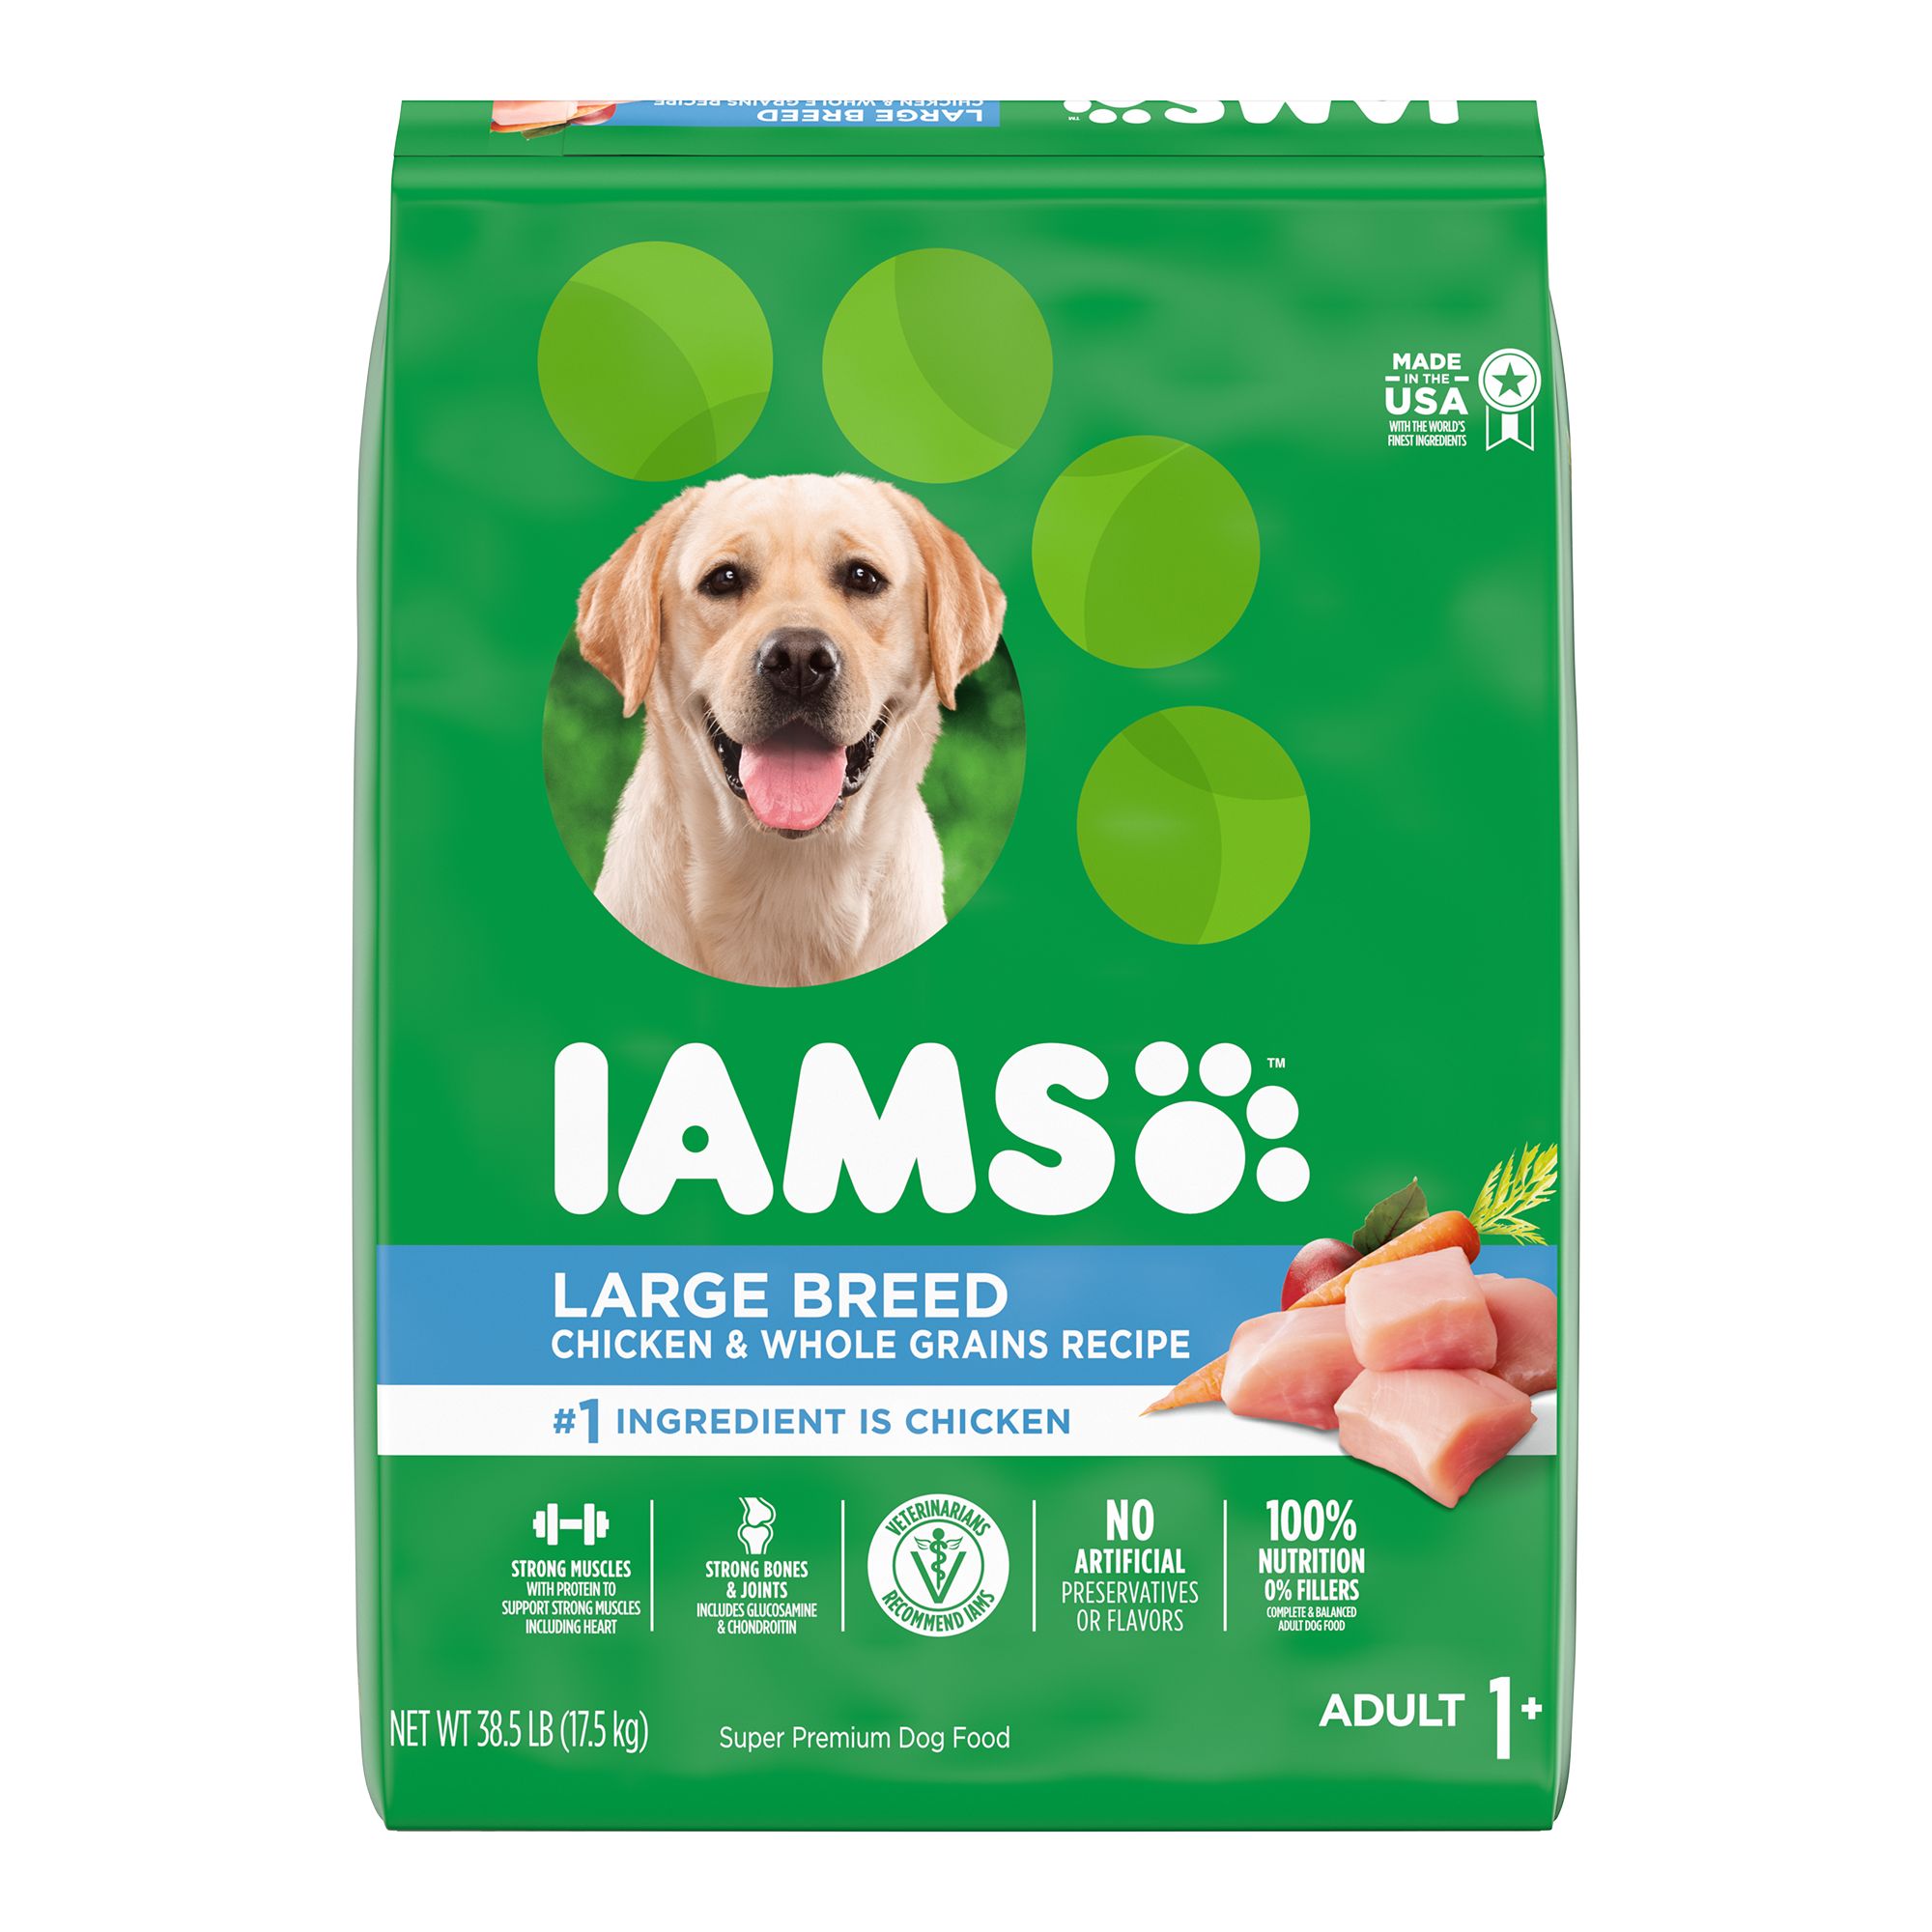 iams dog food for german shepherds